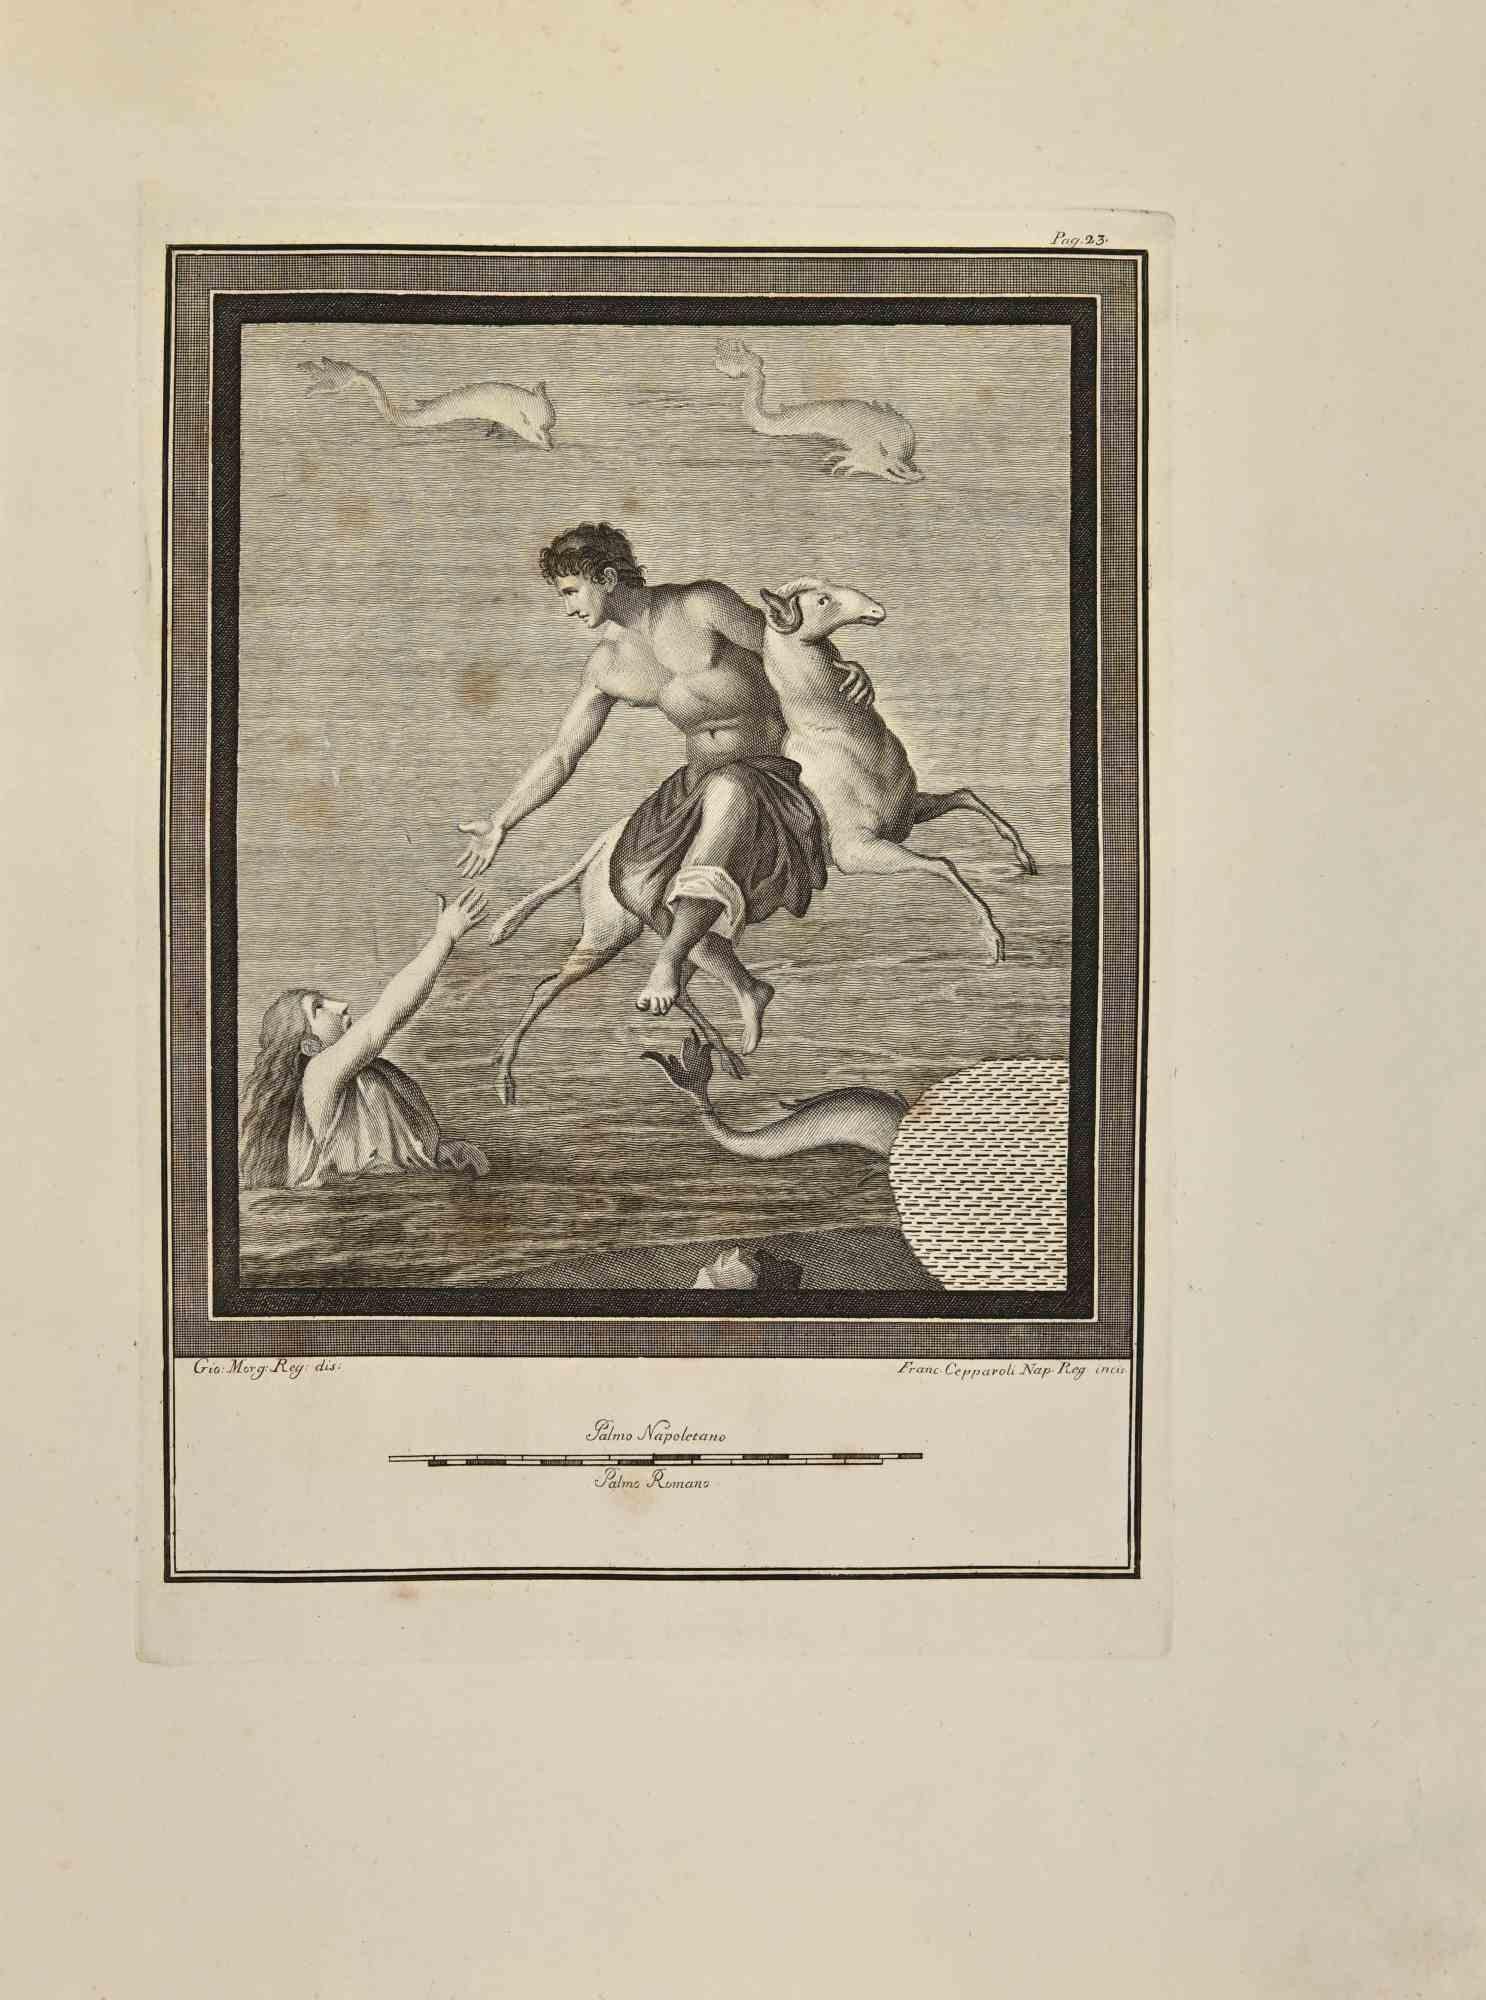 Helle atteignant Phrixus sur son bélier d'or volant des "Antiquités d'Herculanum" est une gravure sur papier réalisée par Francesco Cepparoli au 18ème siècle.

Signé sur la plaque.

Bon état, marges vieillies.

La gravure appartient à la suite